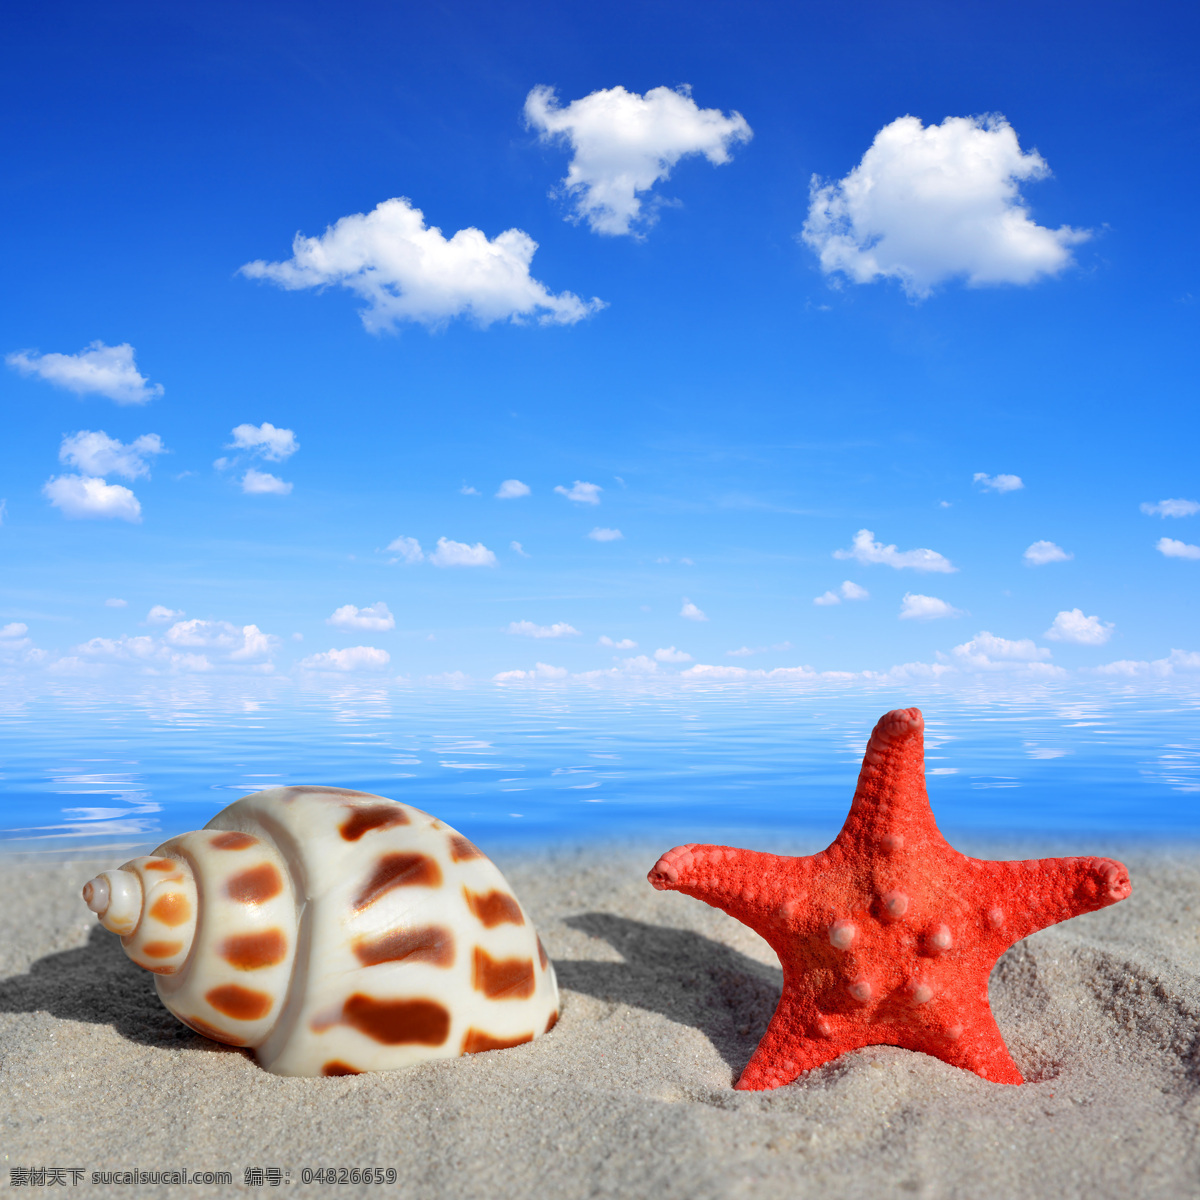 海滩 上 海螺 海星 海滩风景 蓝天白云 沙滩风景 大海风景 生活人物 人物图片